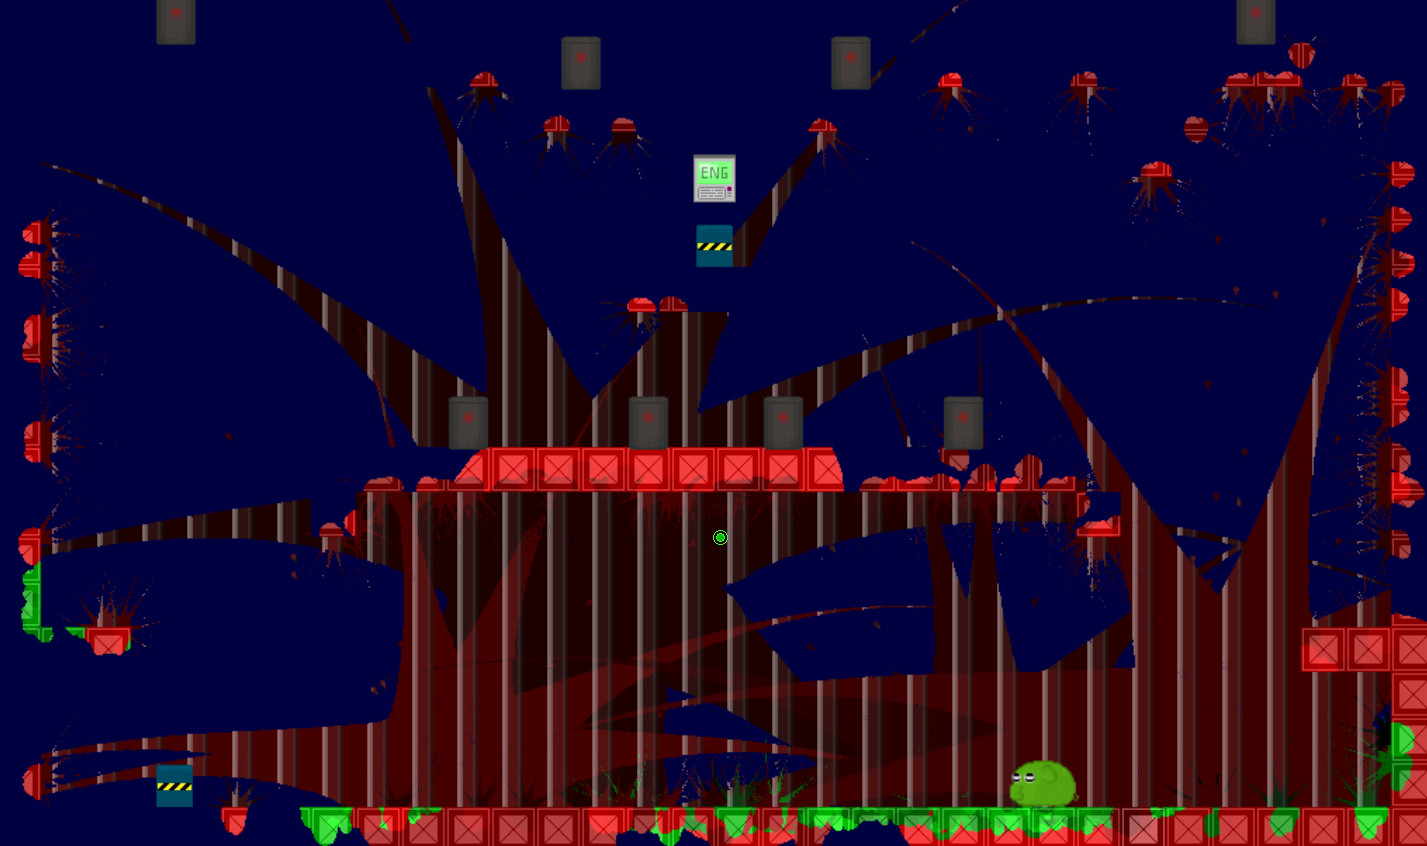 Jellyphant escape screenshot